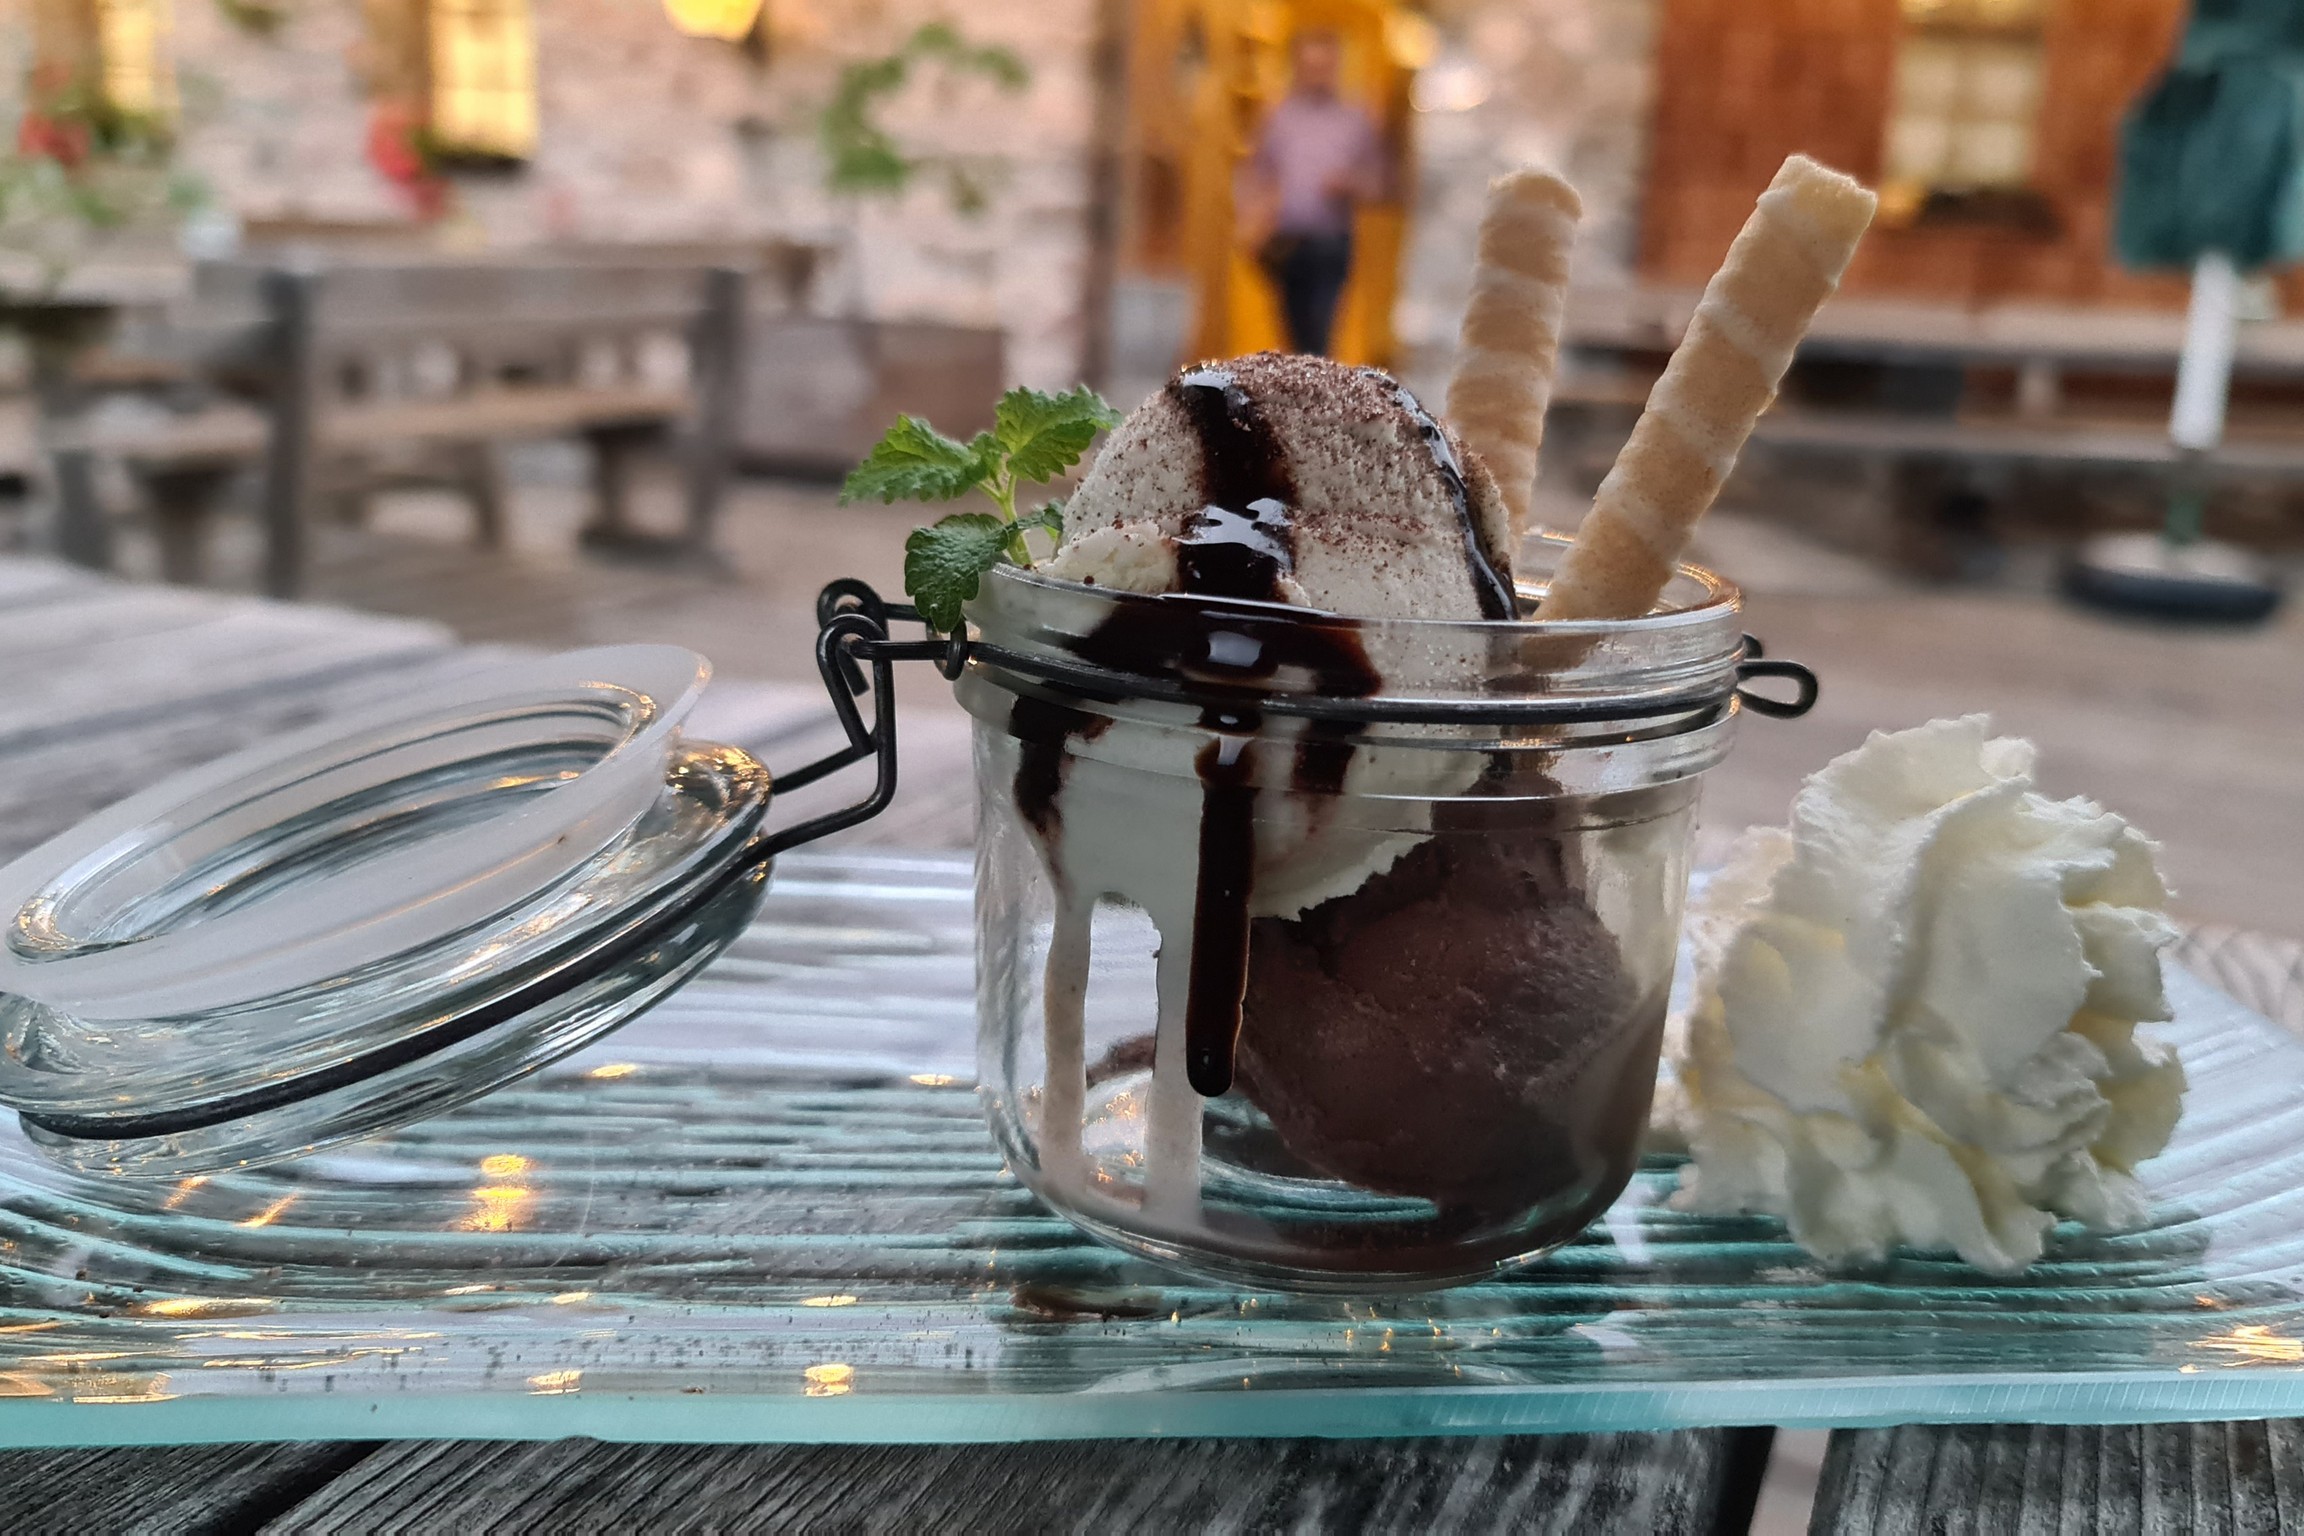   süße Augenblicke mit einem Eis-Dessert © Bärenhütte Tröpolach 